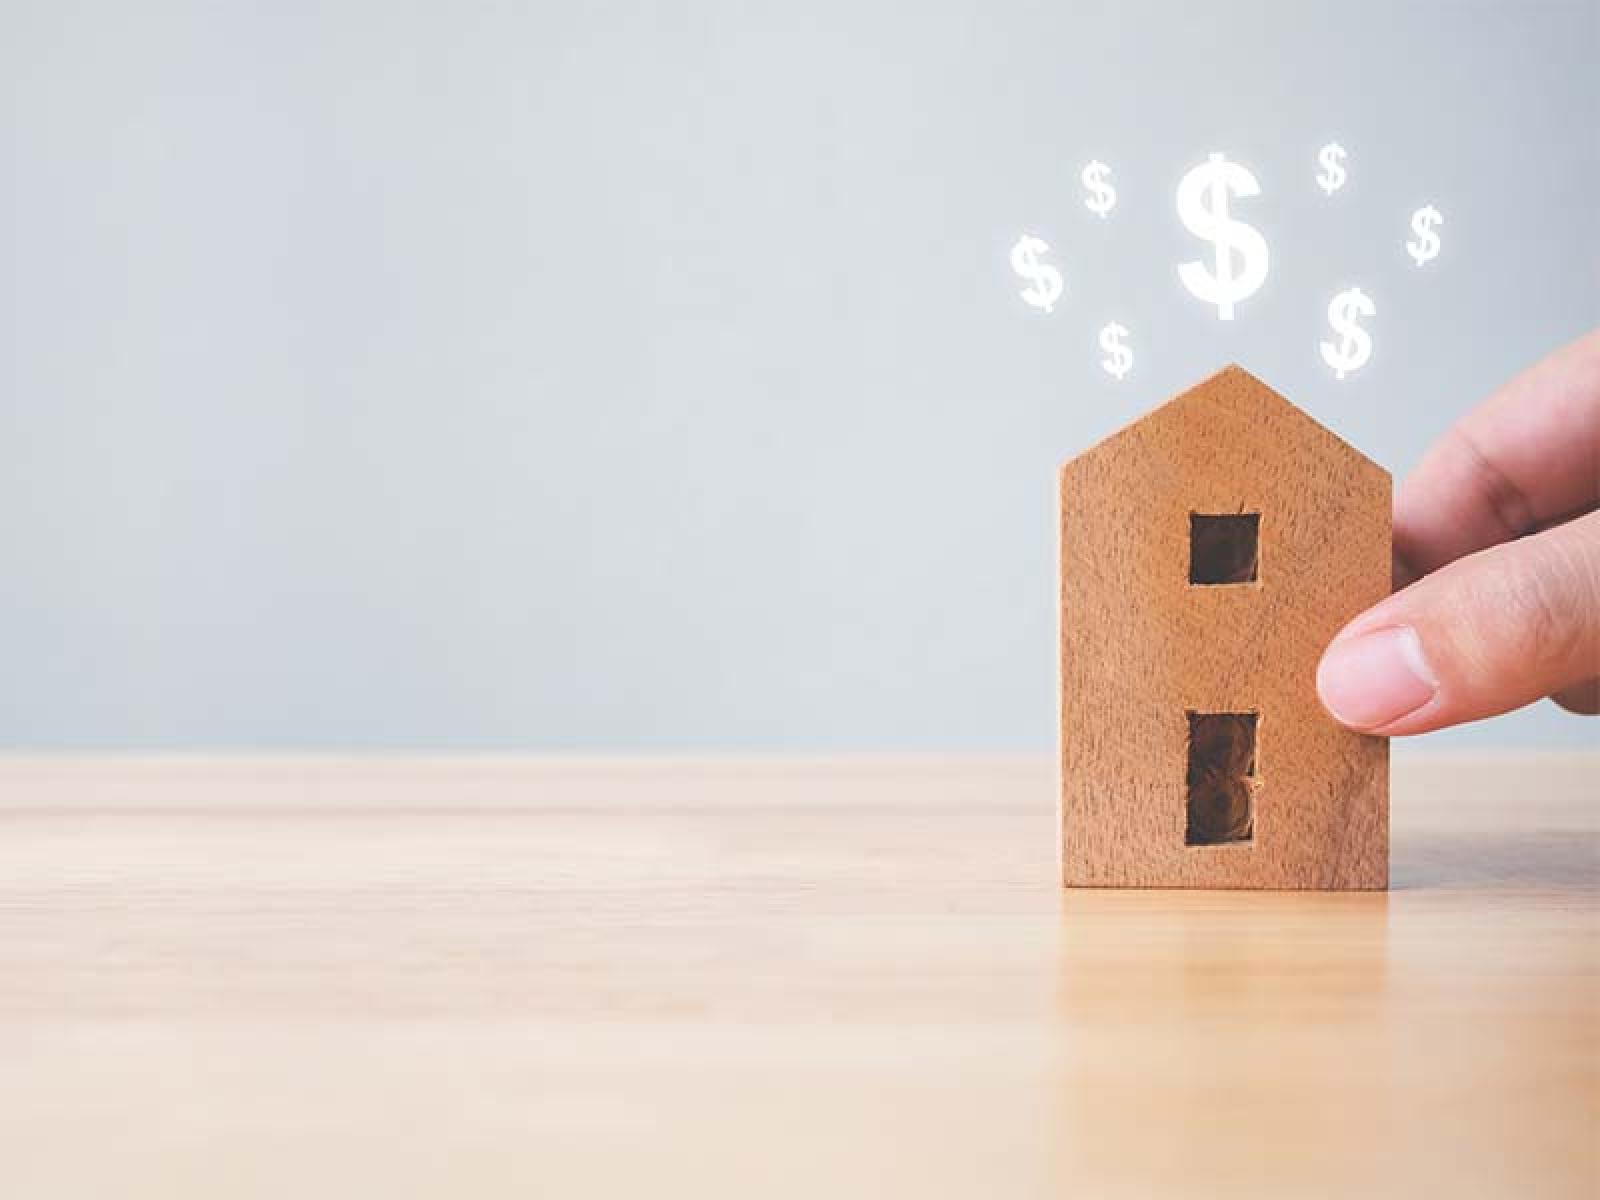 Perché investire nel crowdfunding immobiliare